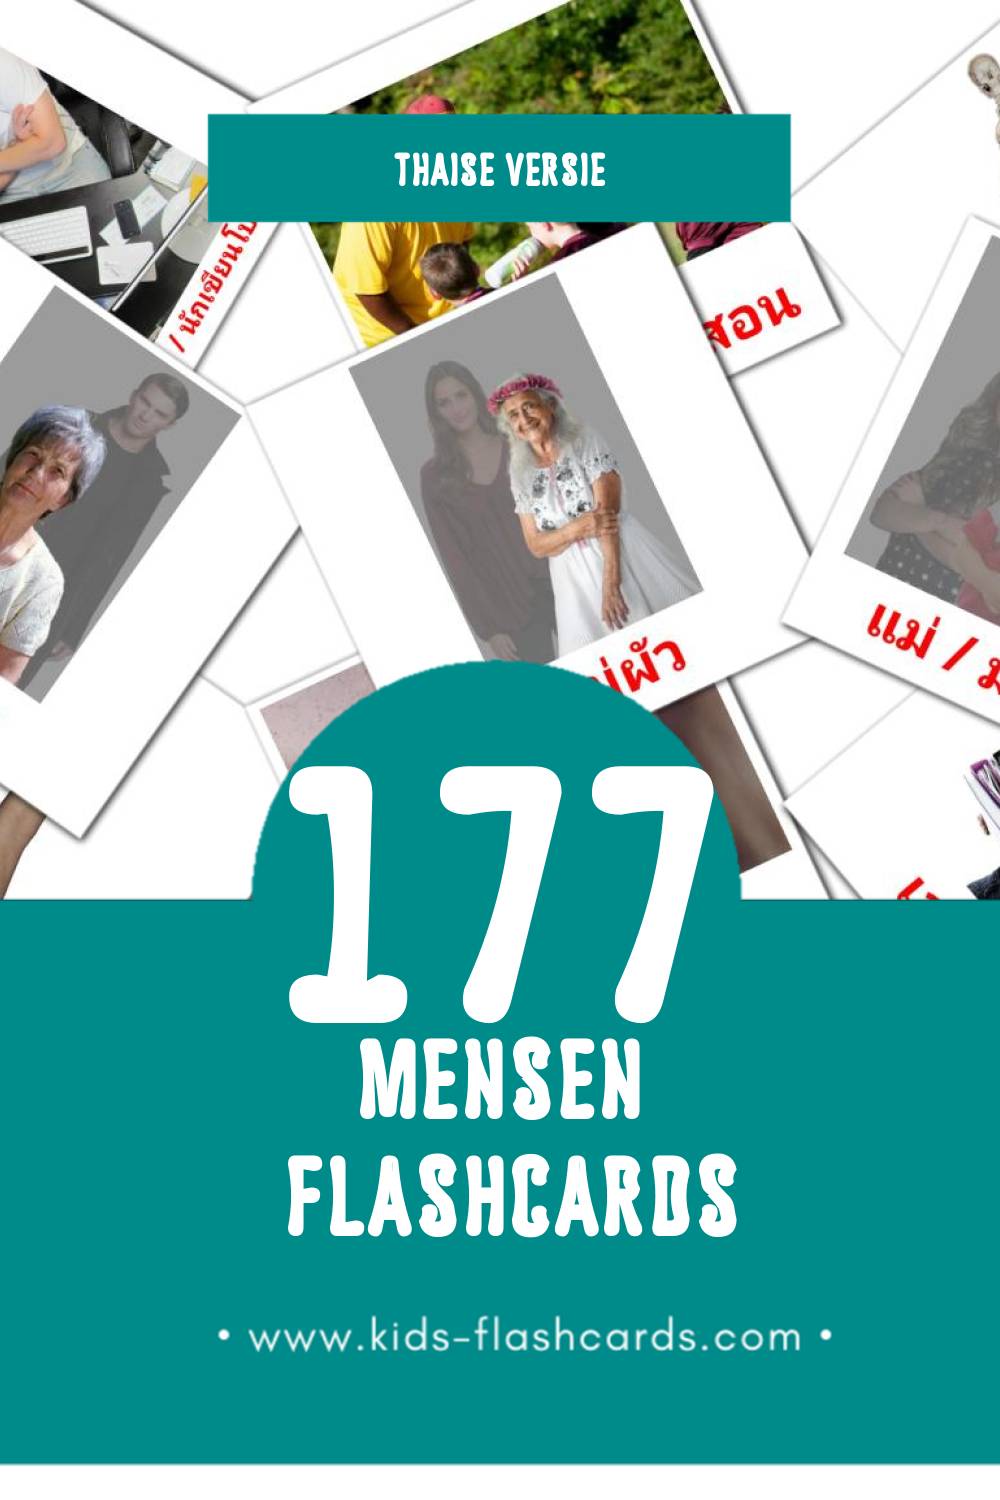 Visuele ผู้คน Flashcards voor Kleuters (177 kaarten in het Thais)